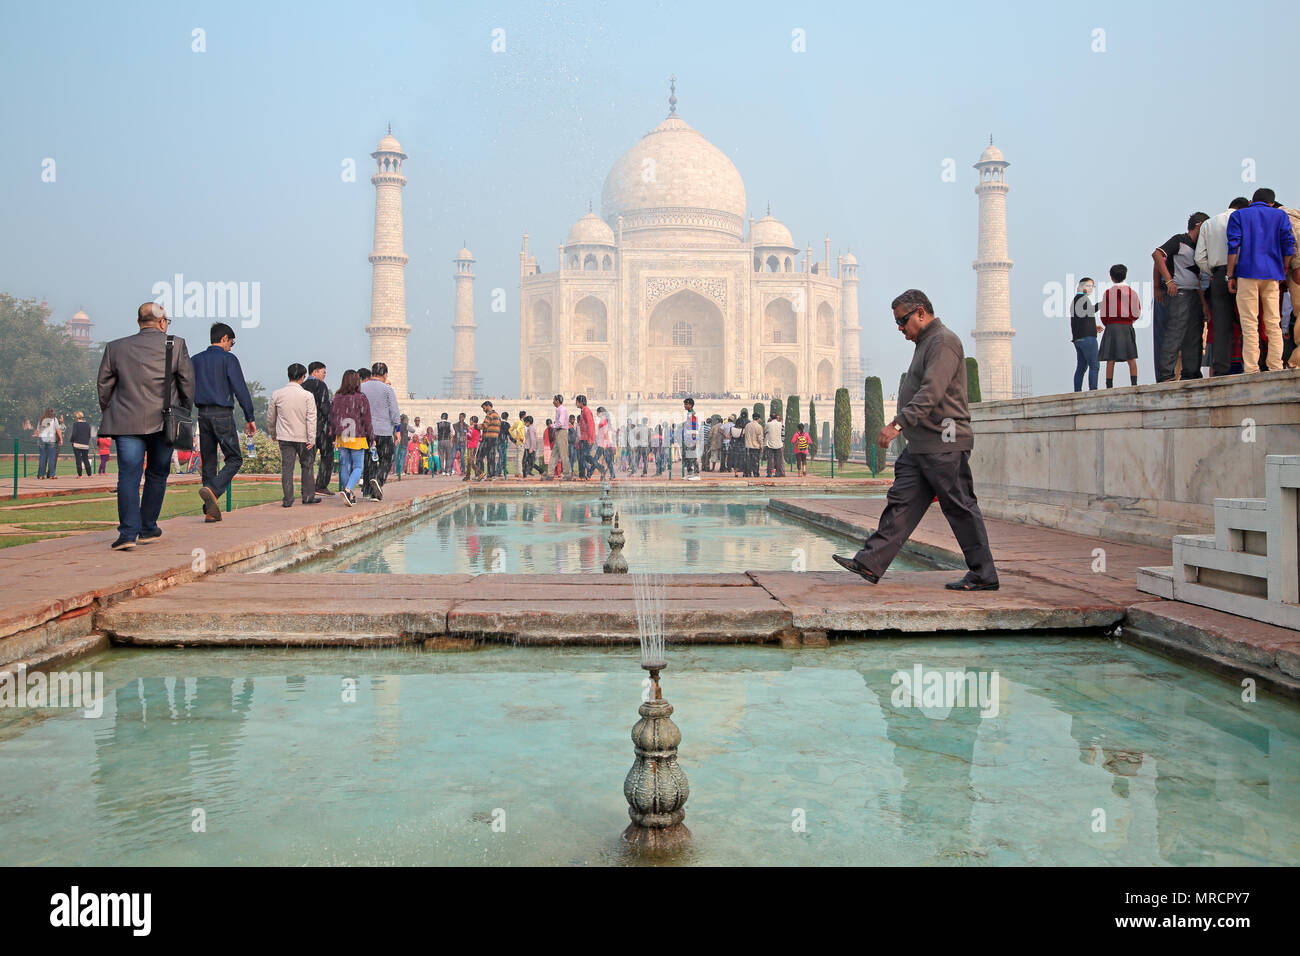 Agra, Inde - le 29 novembre 2015 : célèbre Taj Mahal avec les touristes - un immense mausolée de marbre blanc construit par l'empereur Moghol Shah Jahan Banque D'Images